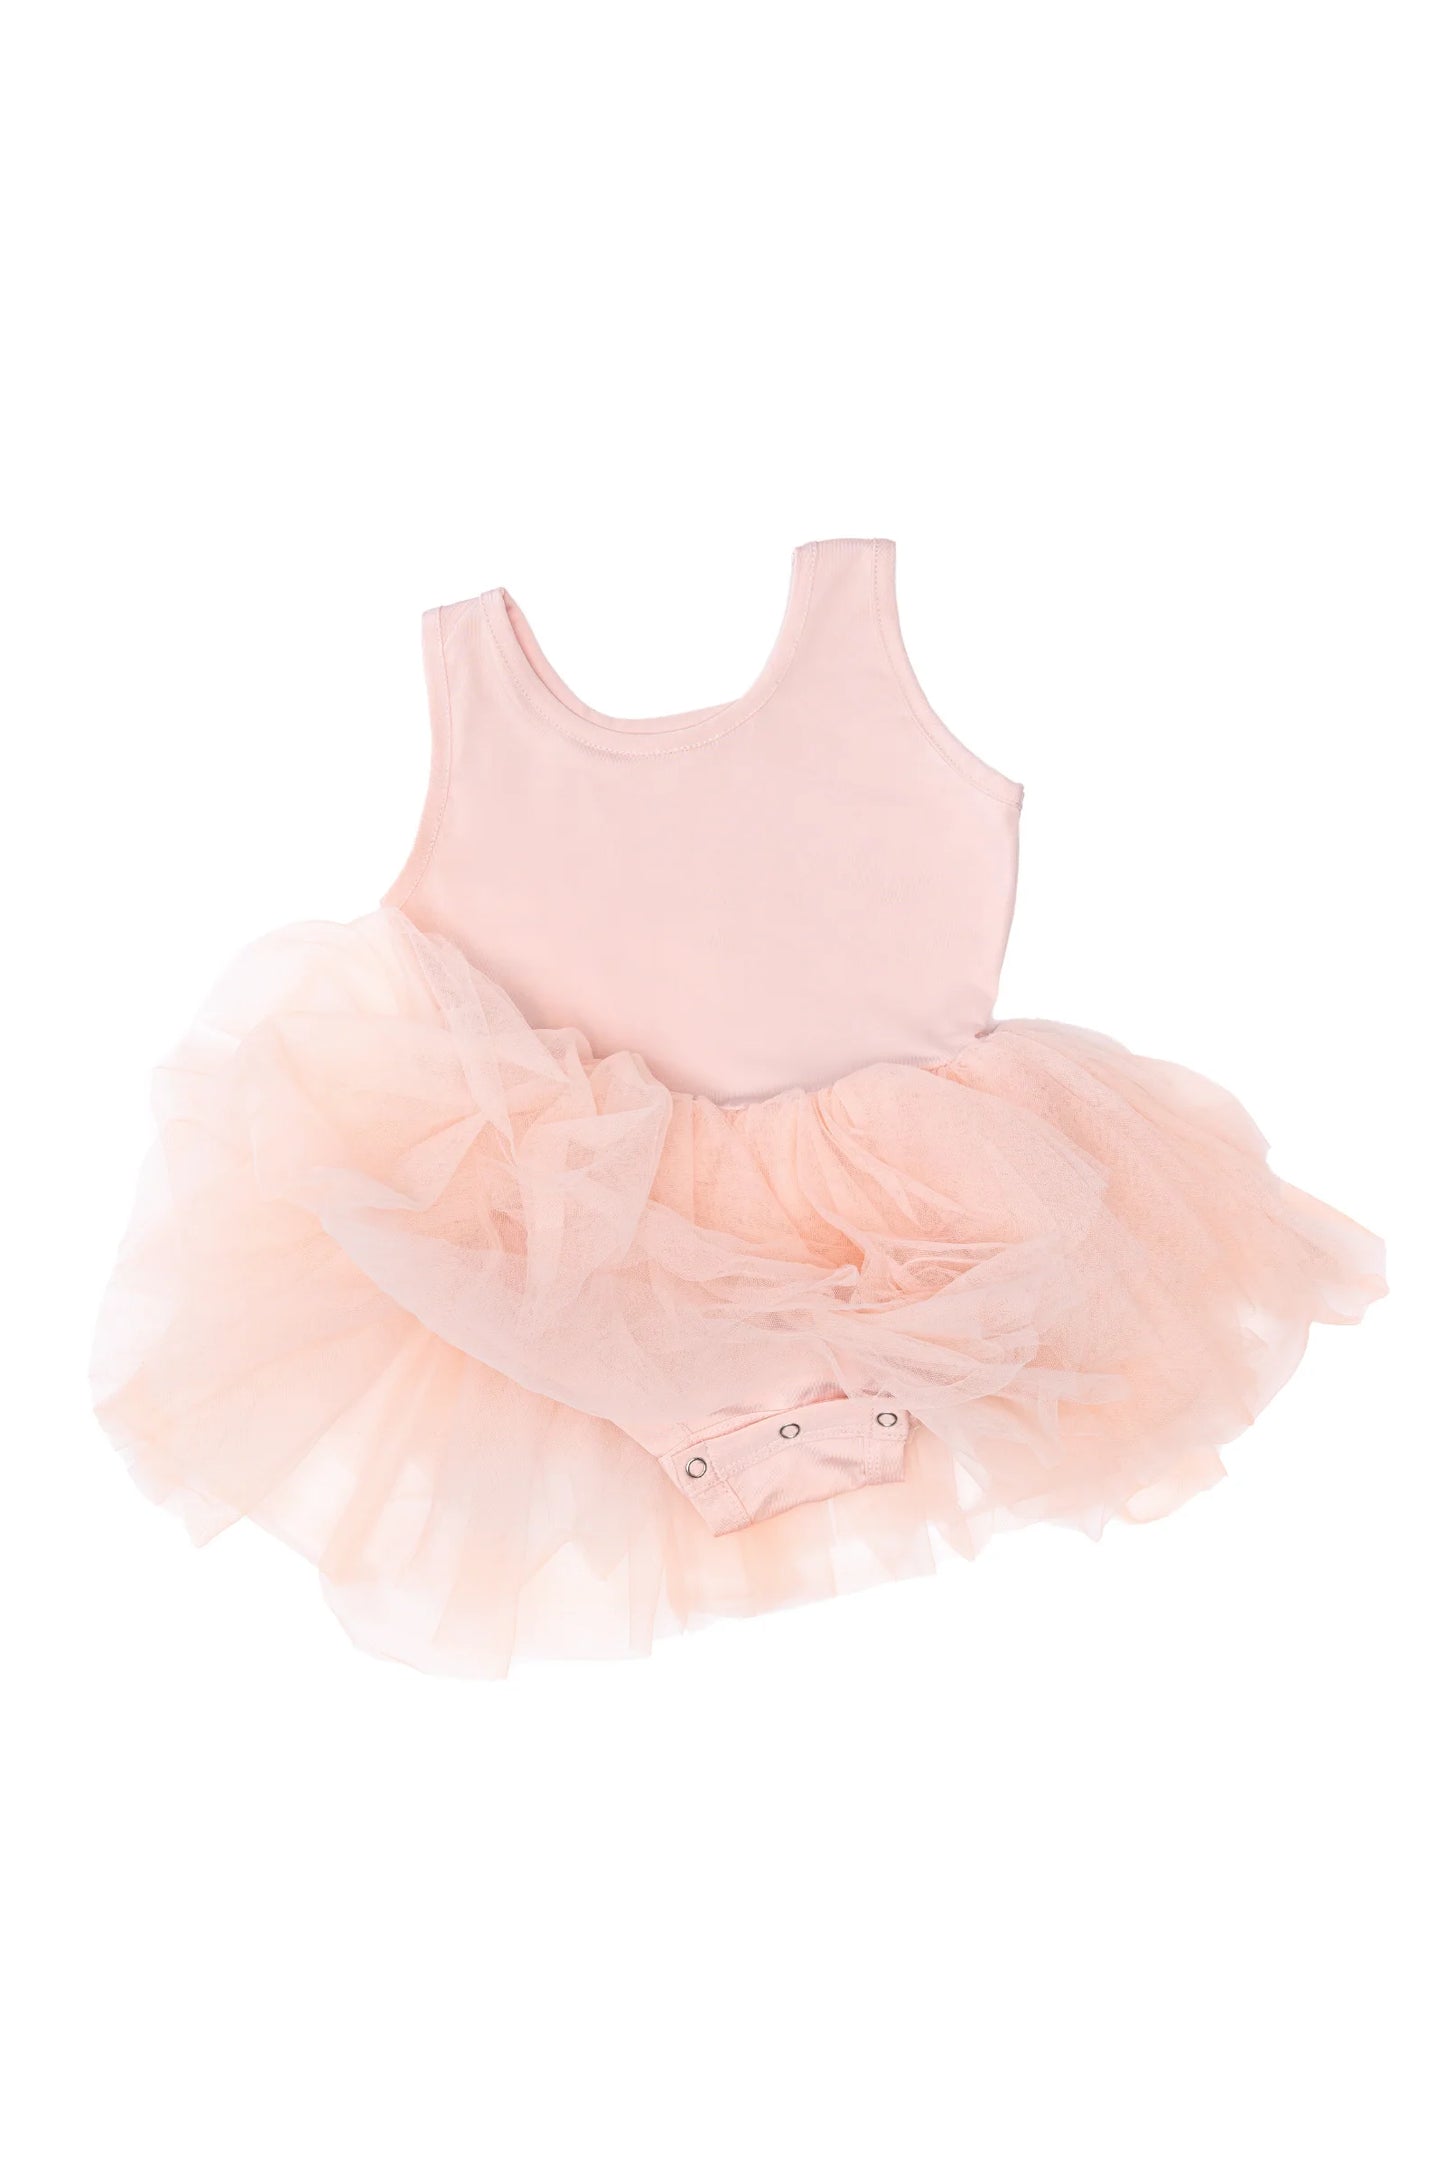 Dress Up - Ballet Tutu Dress Light Pink